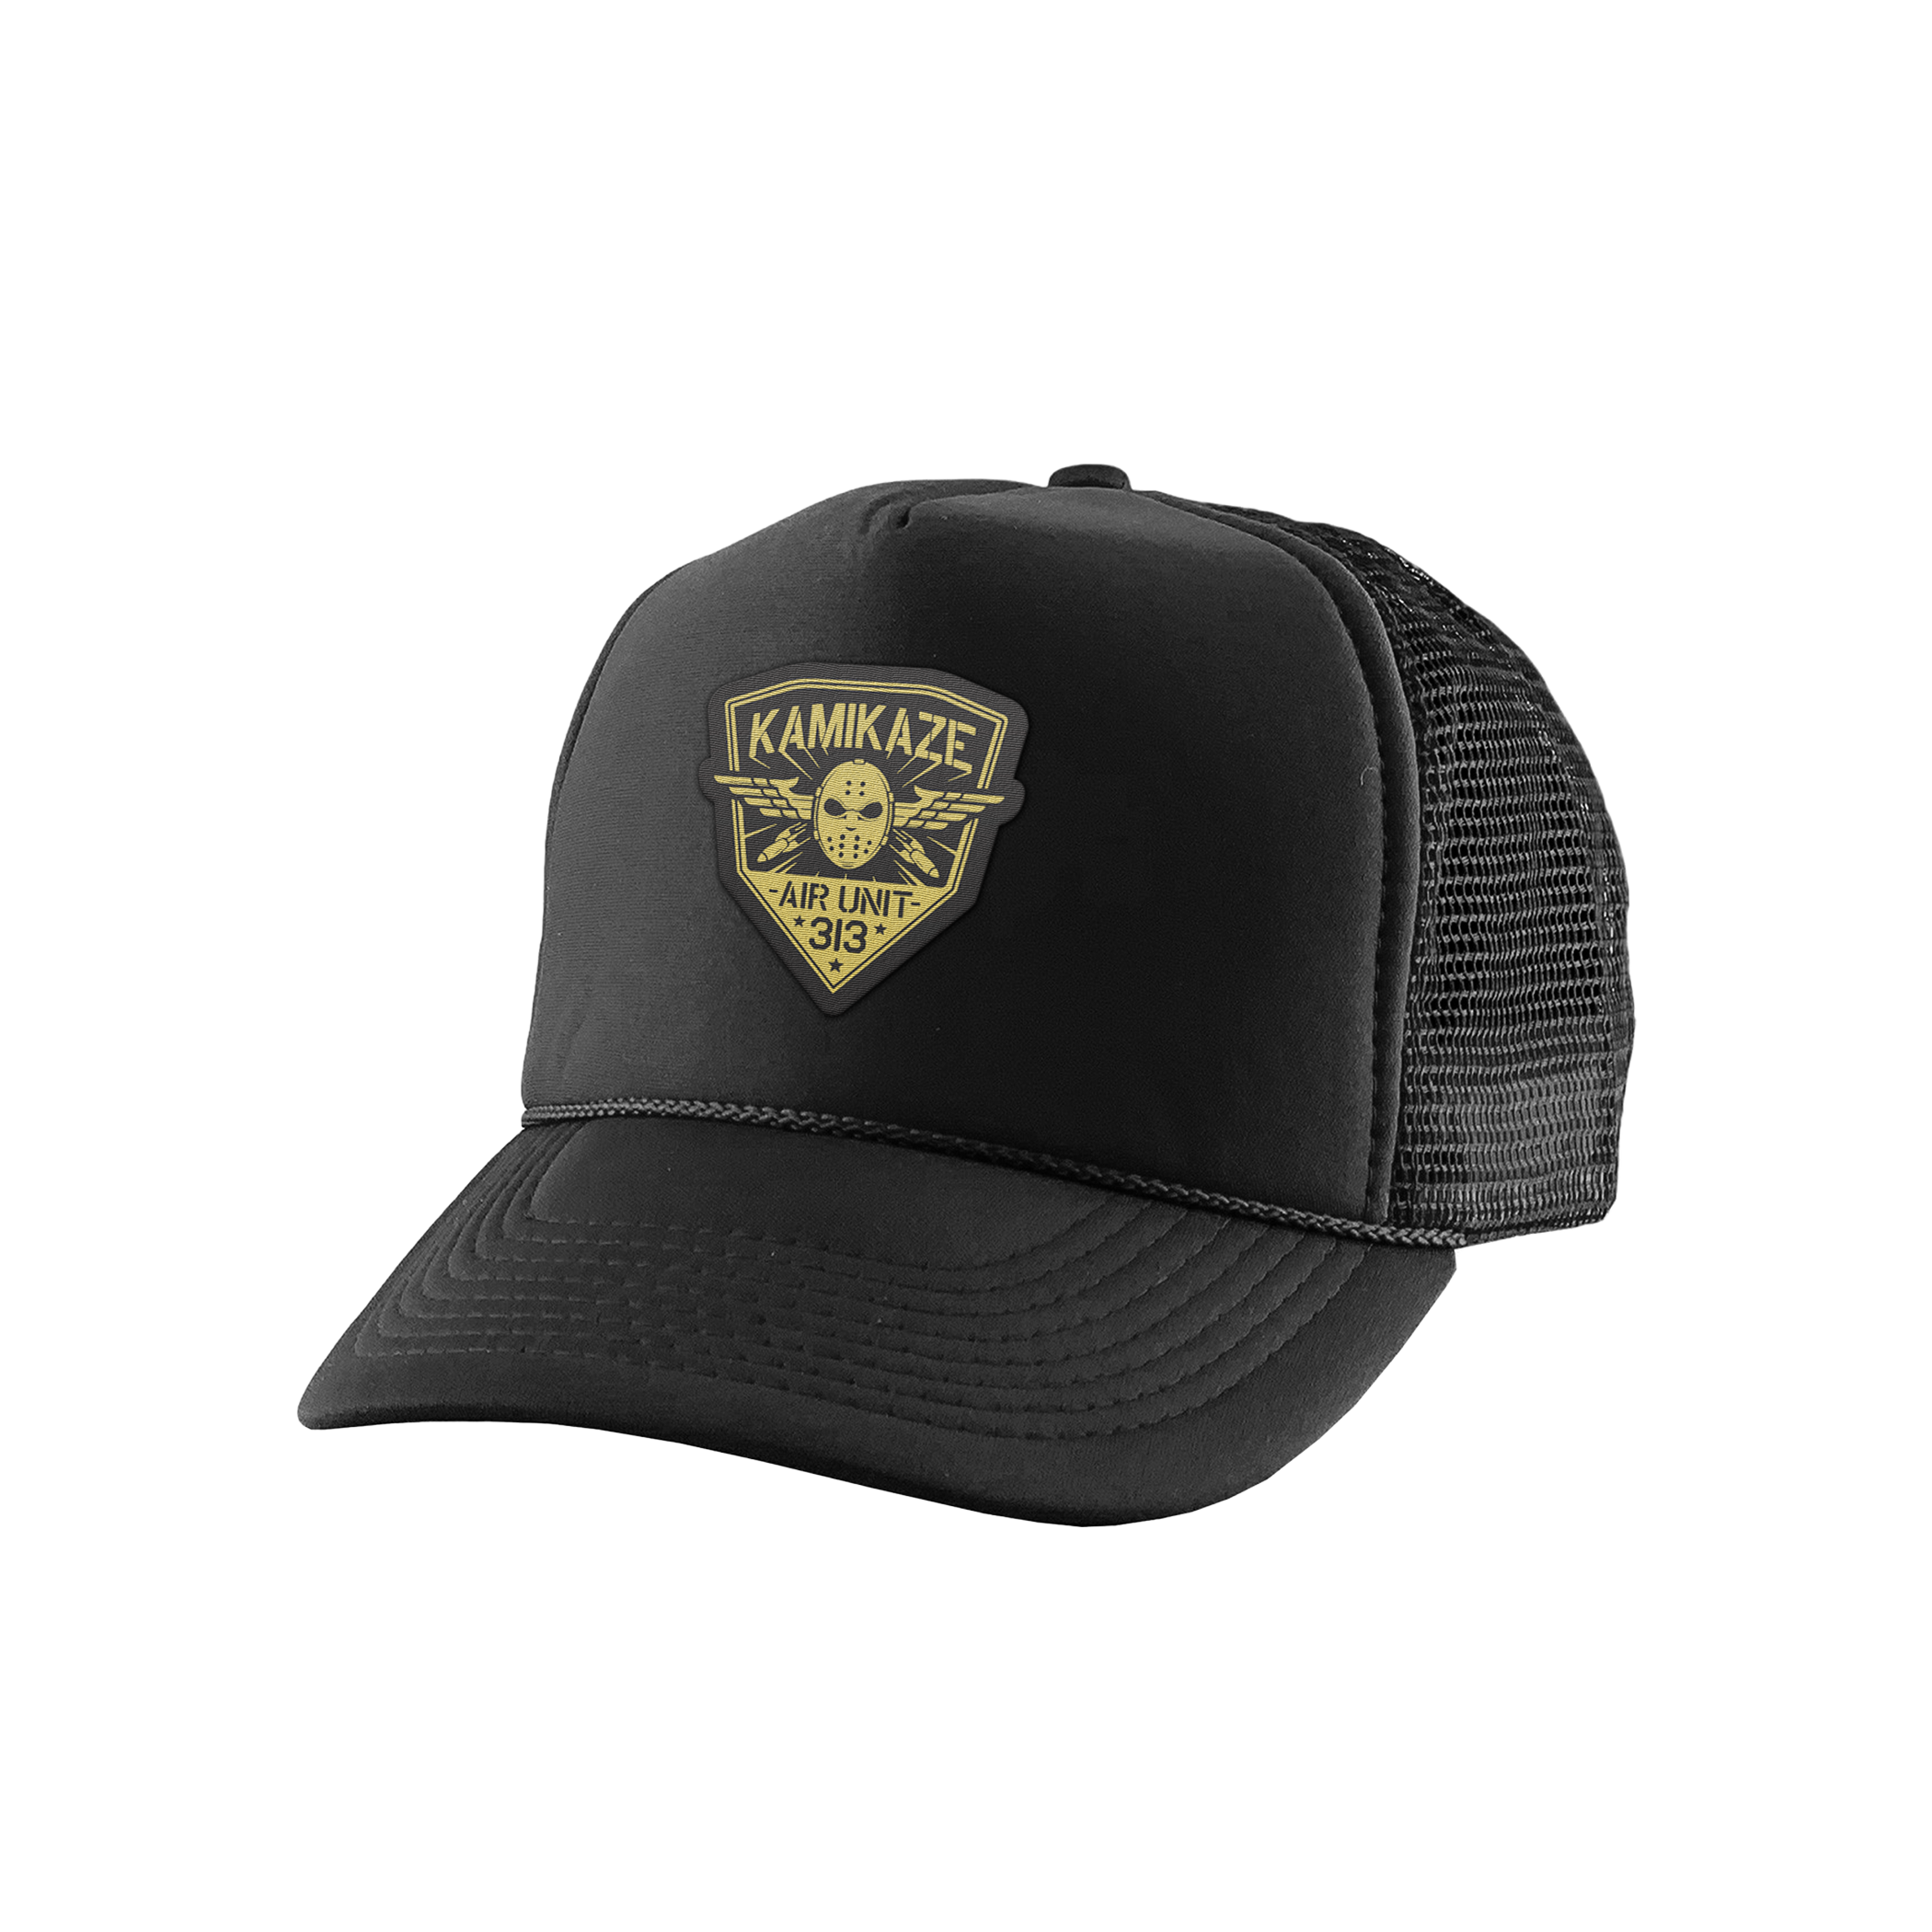 Kamikaze Crest Trucker Hat